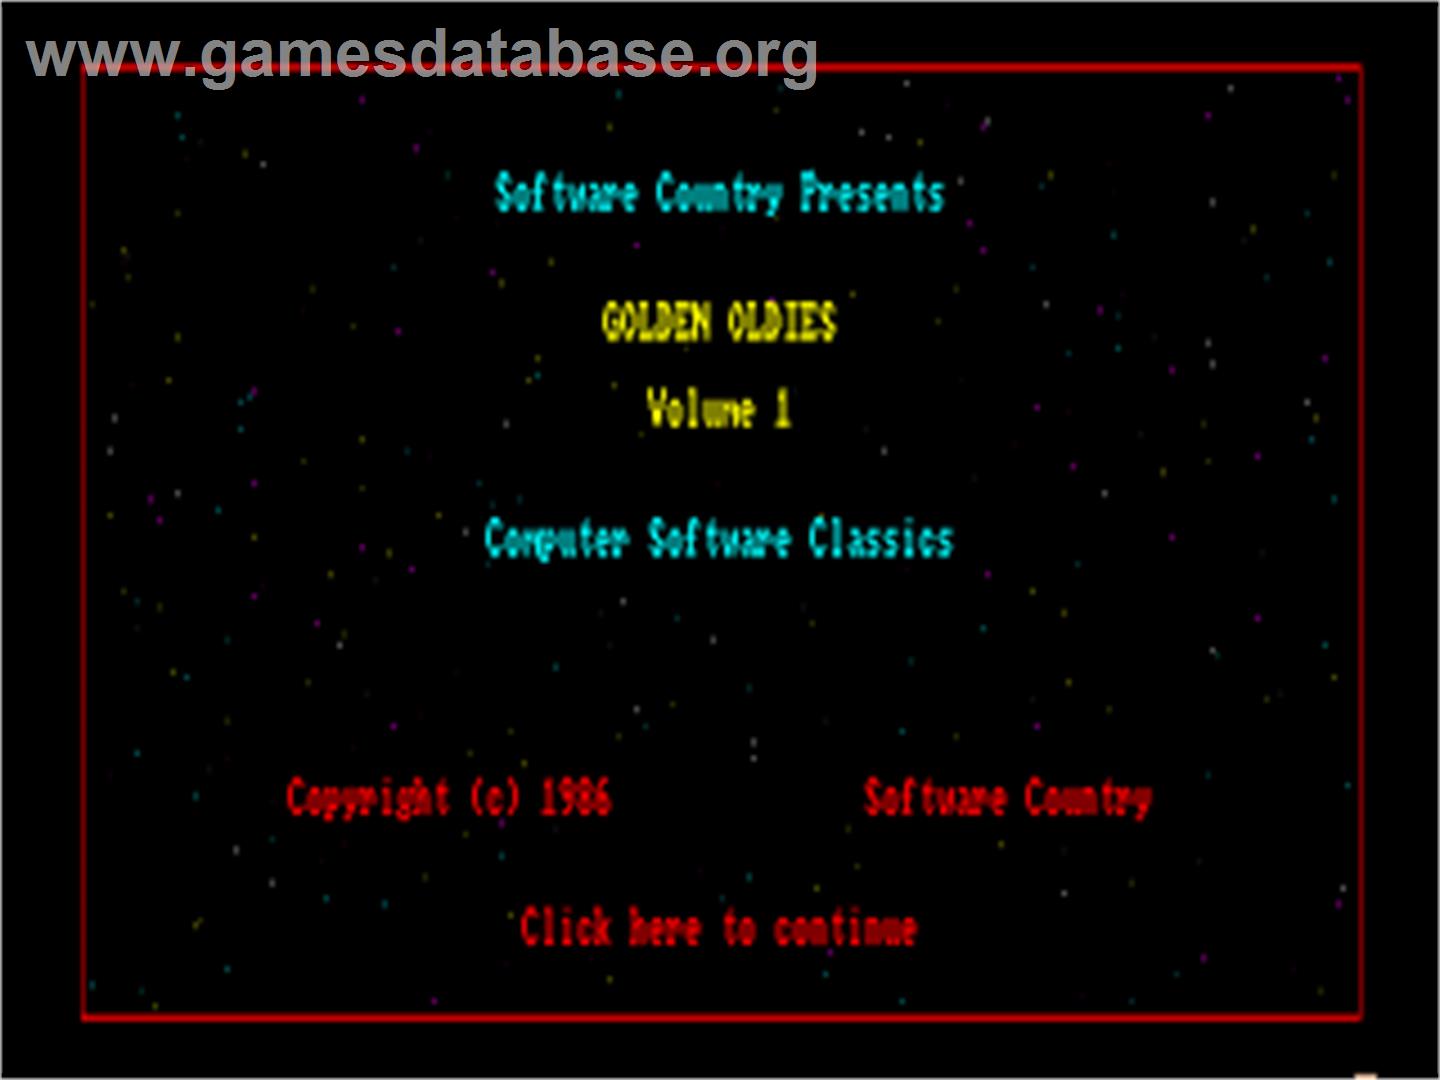 Golden Oldies Vol. 1: Computer Software Classics - Commodore Amiga - Artwork - Title Screen